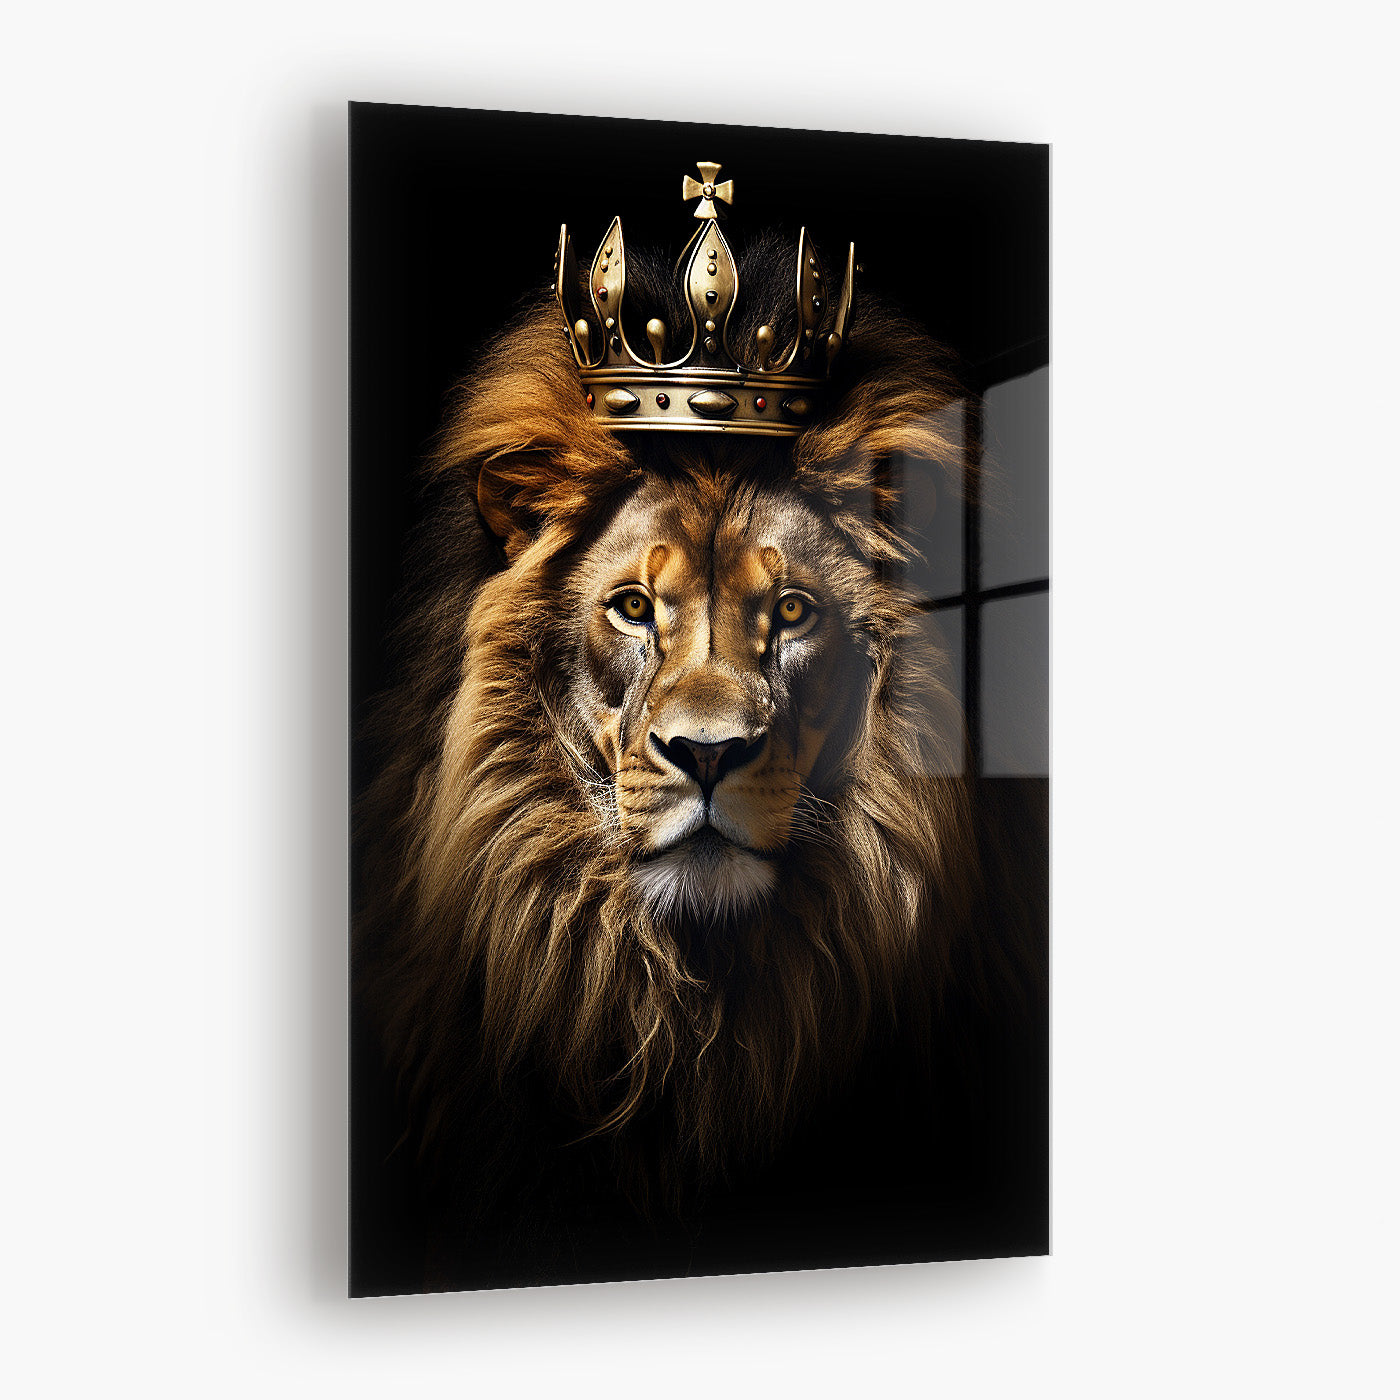 The Regal Lion